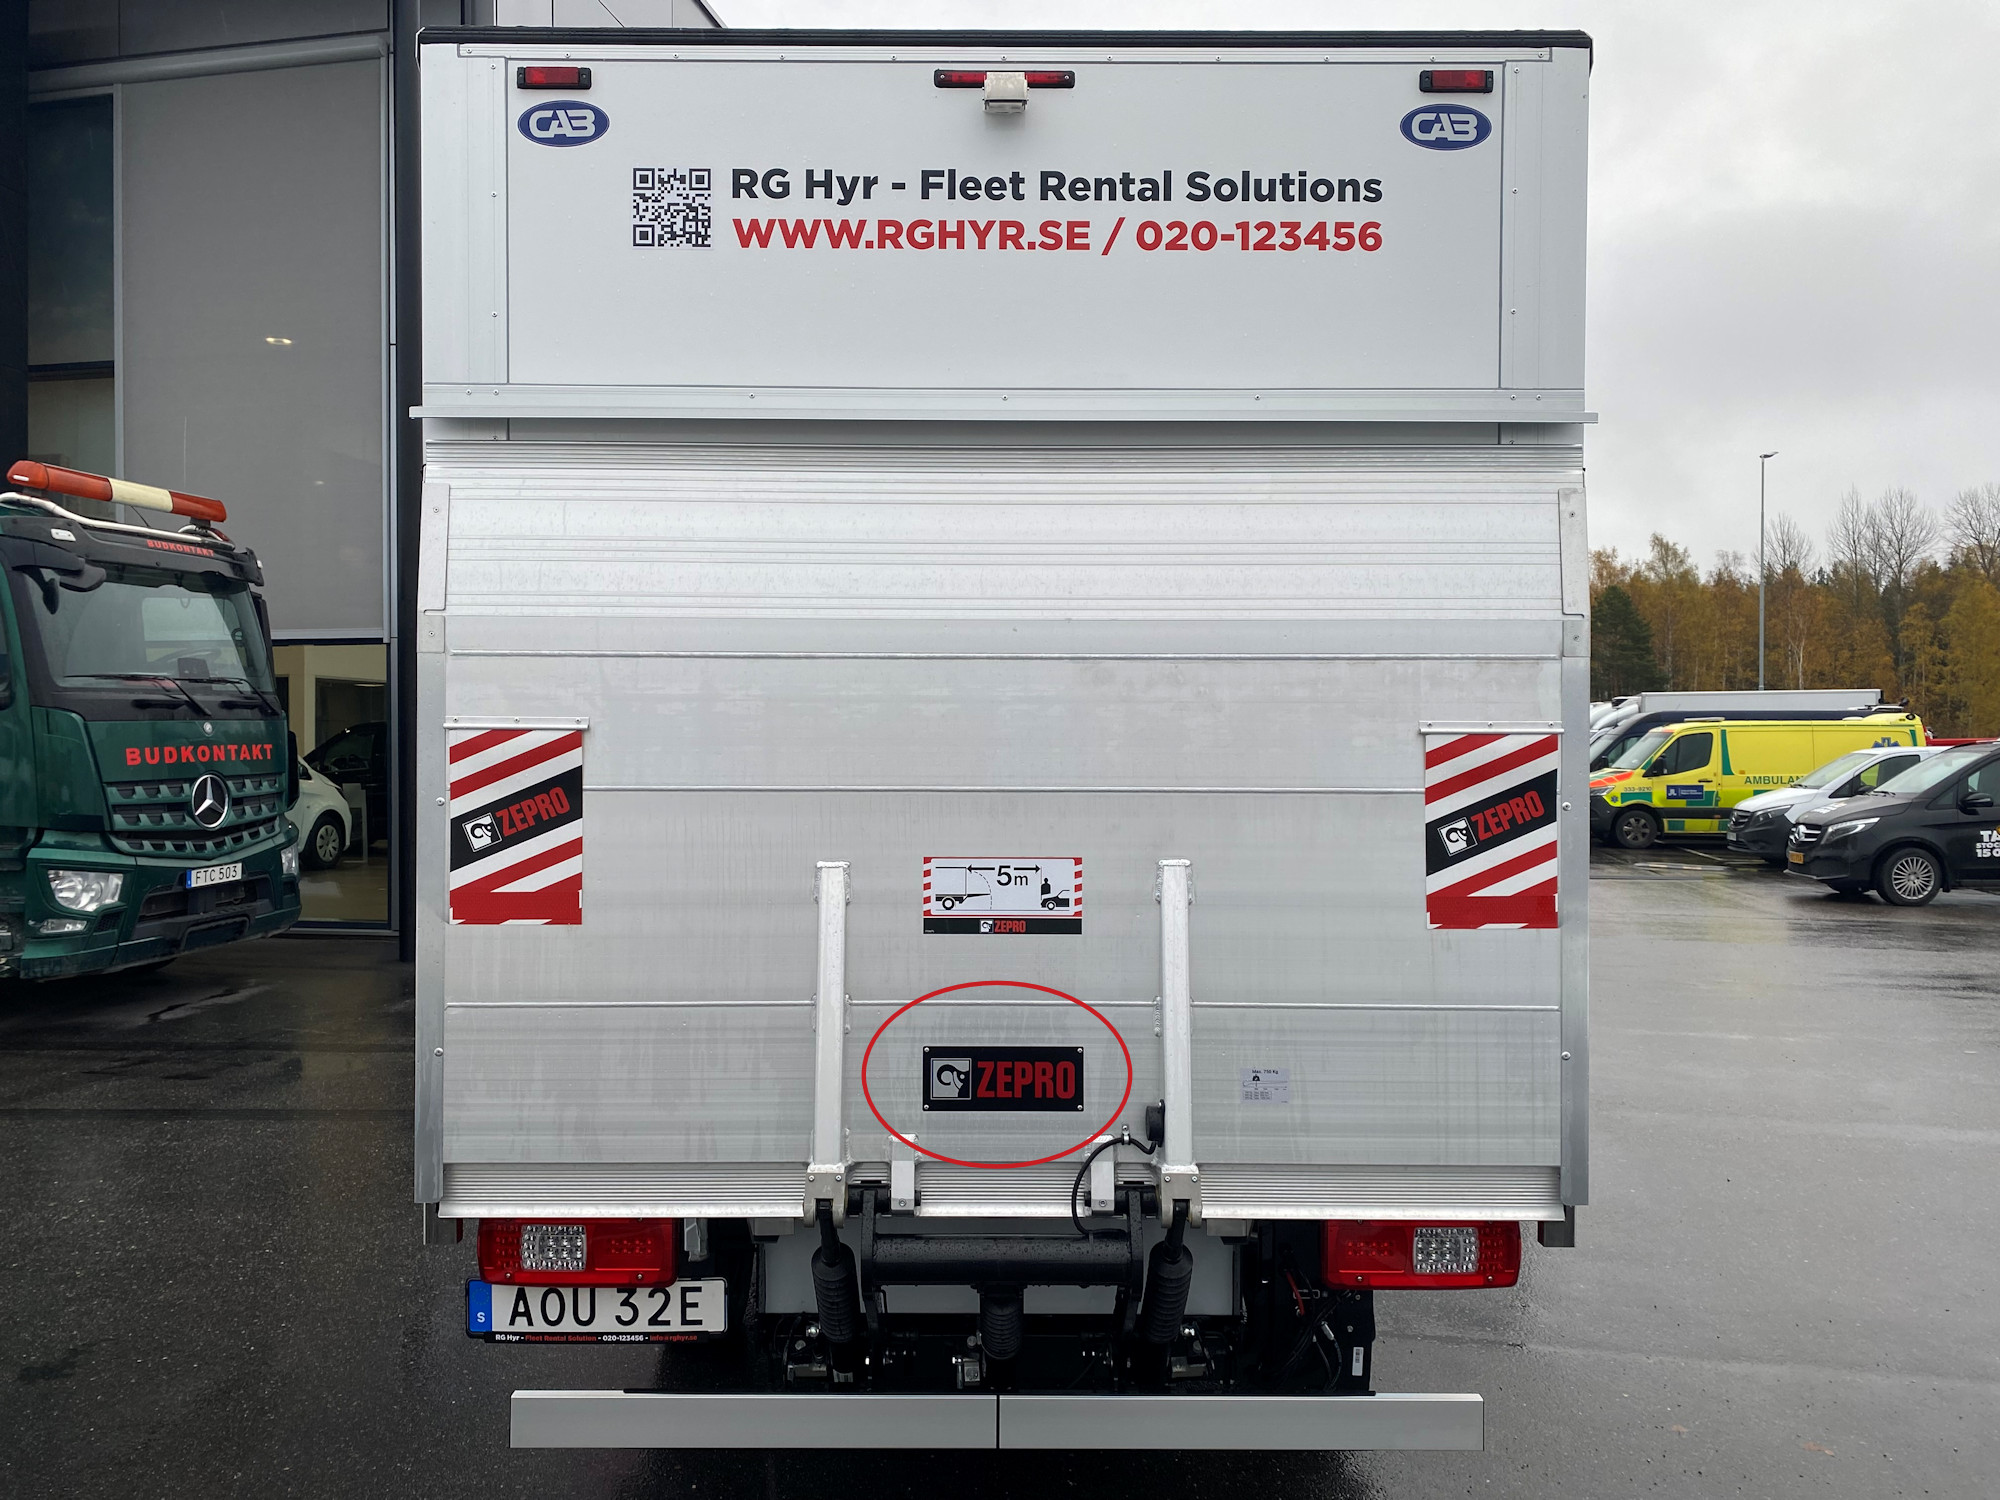 Baklucka av liten öastbil med texten RH Hyr - Fleet Rental Solutions